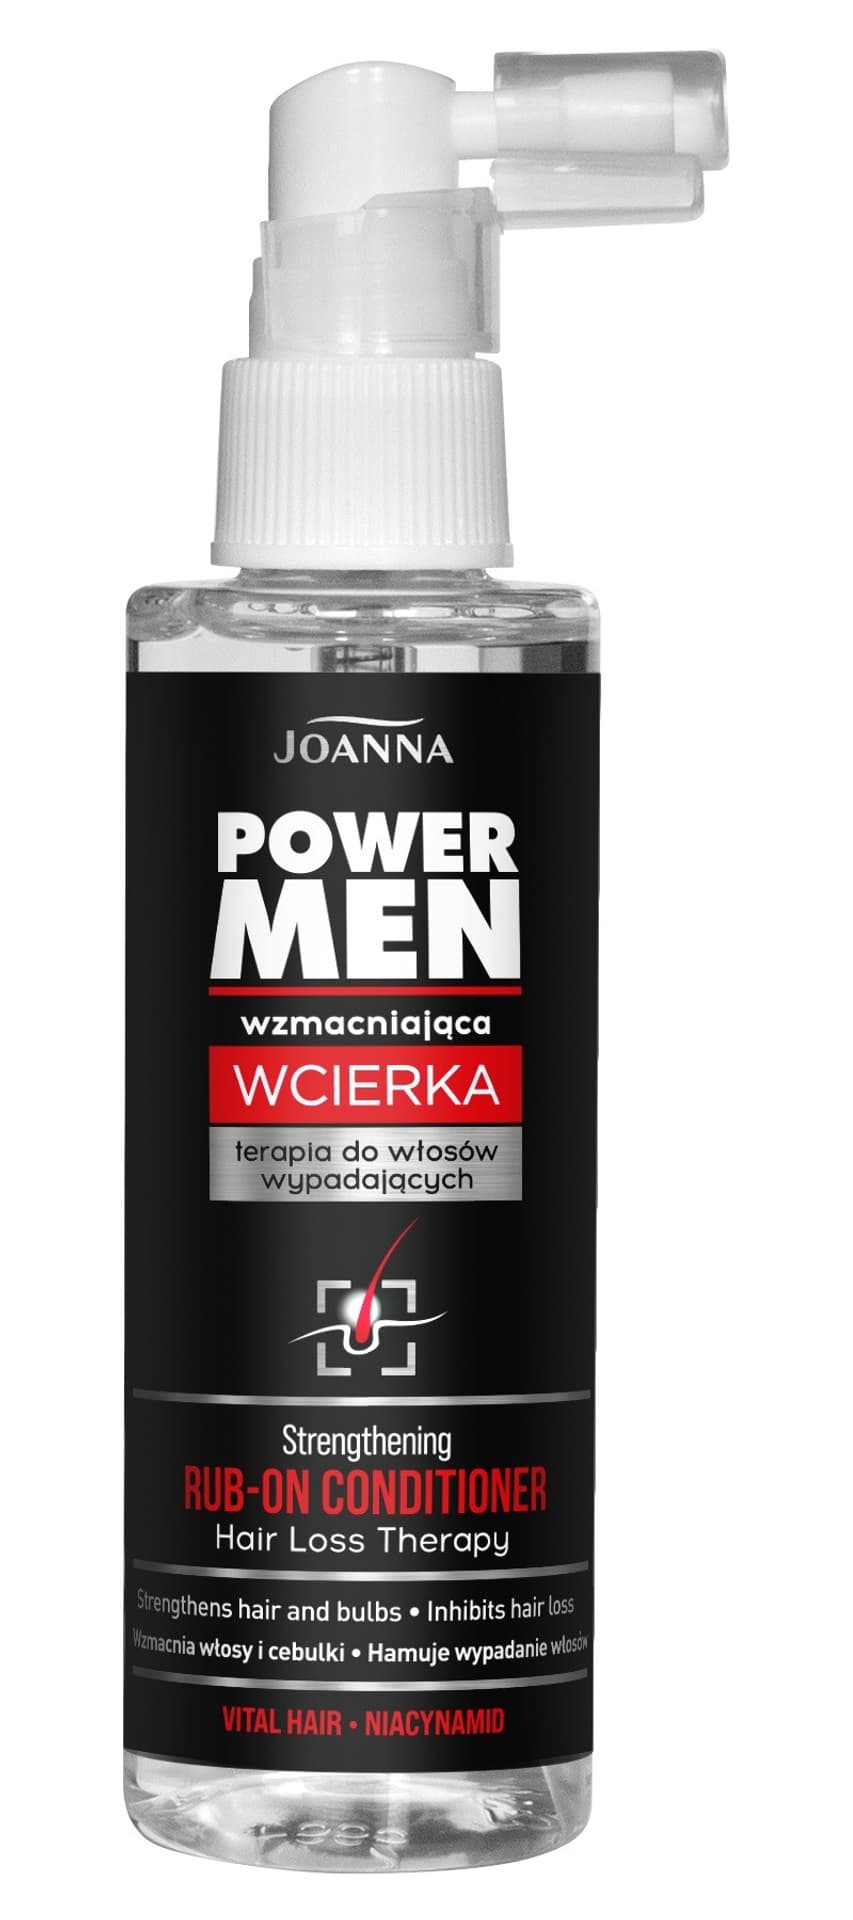 JOANNA Power Men Wcierka wzmacniająca do włosów wypadających 100ml